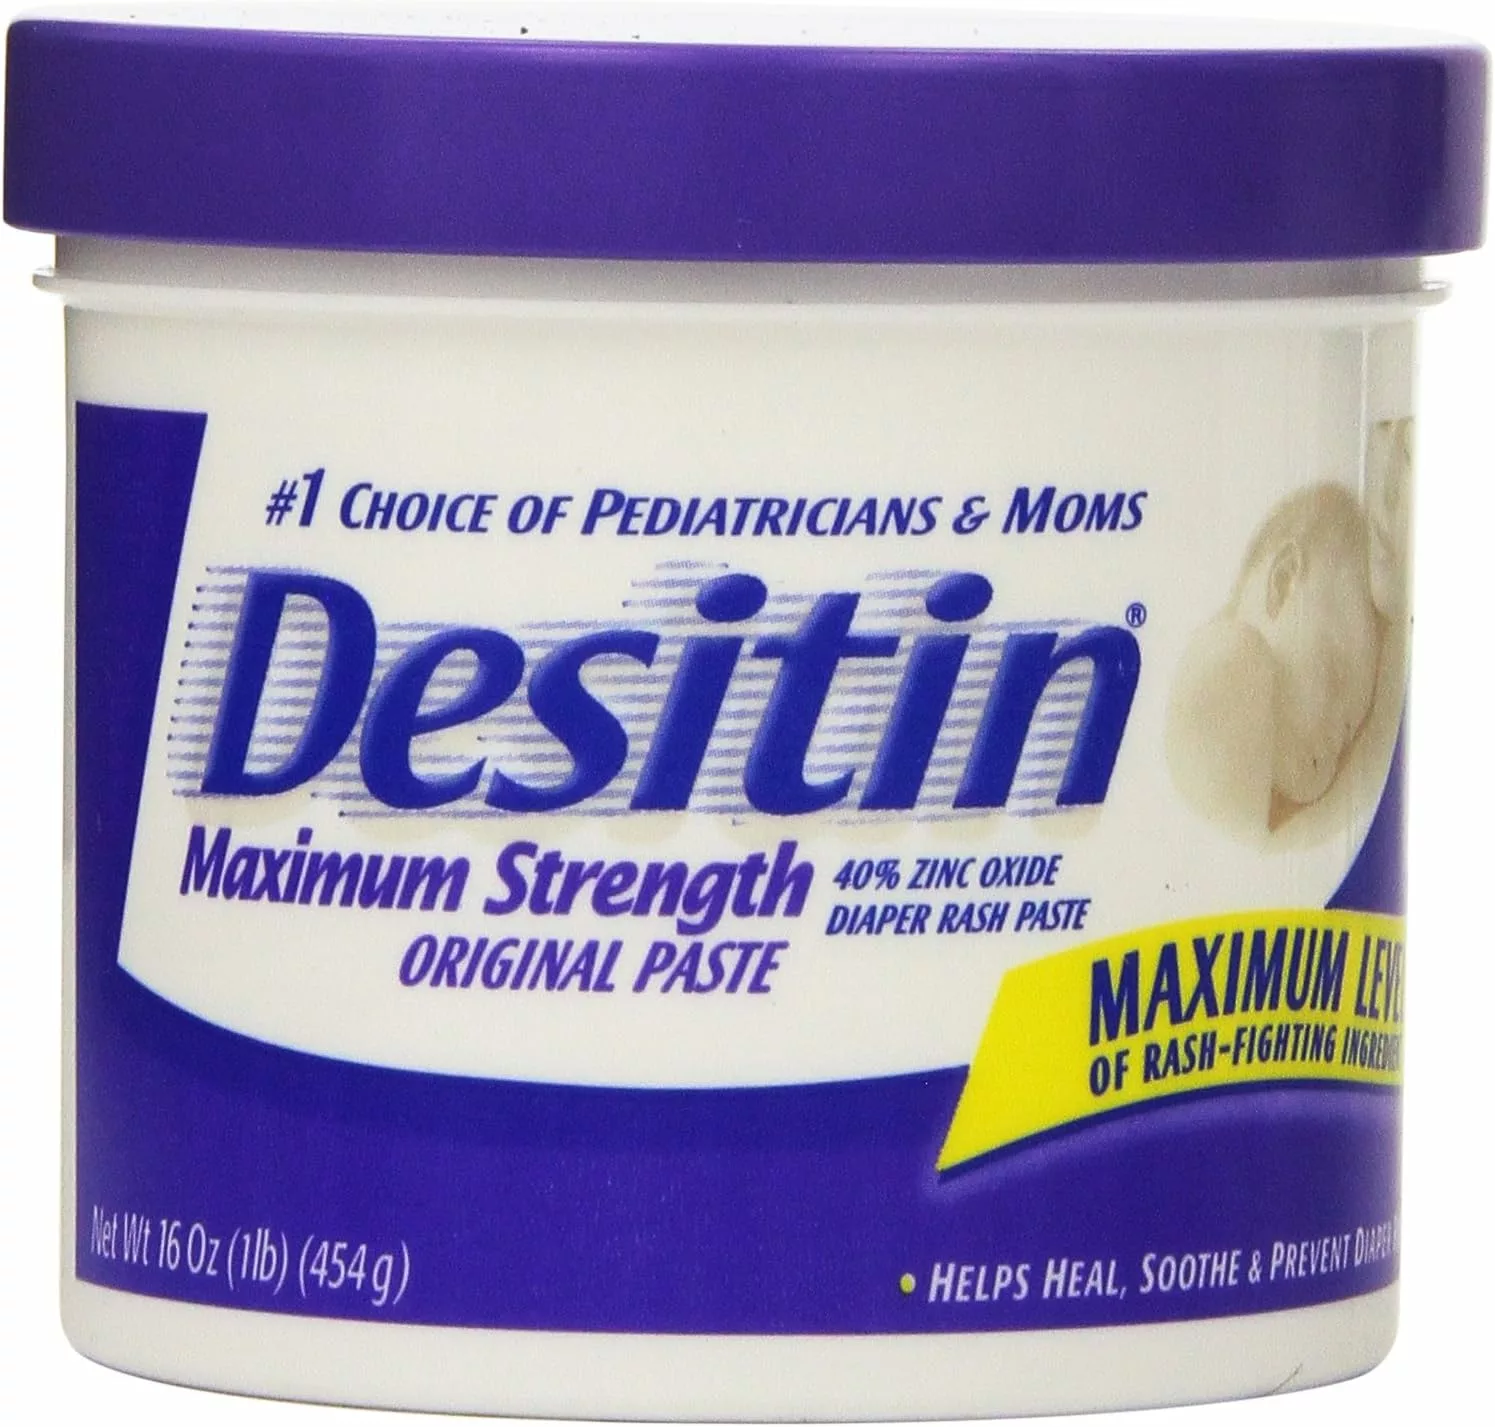 Desitin Maximum Strength Original Paste